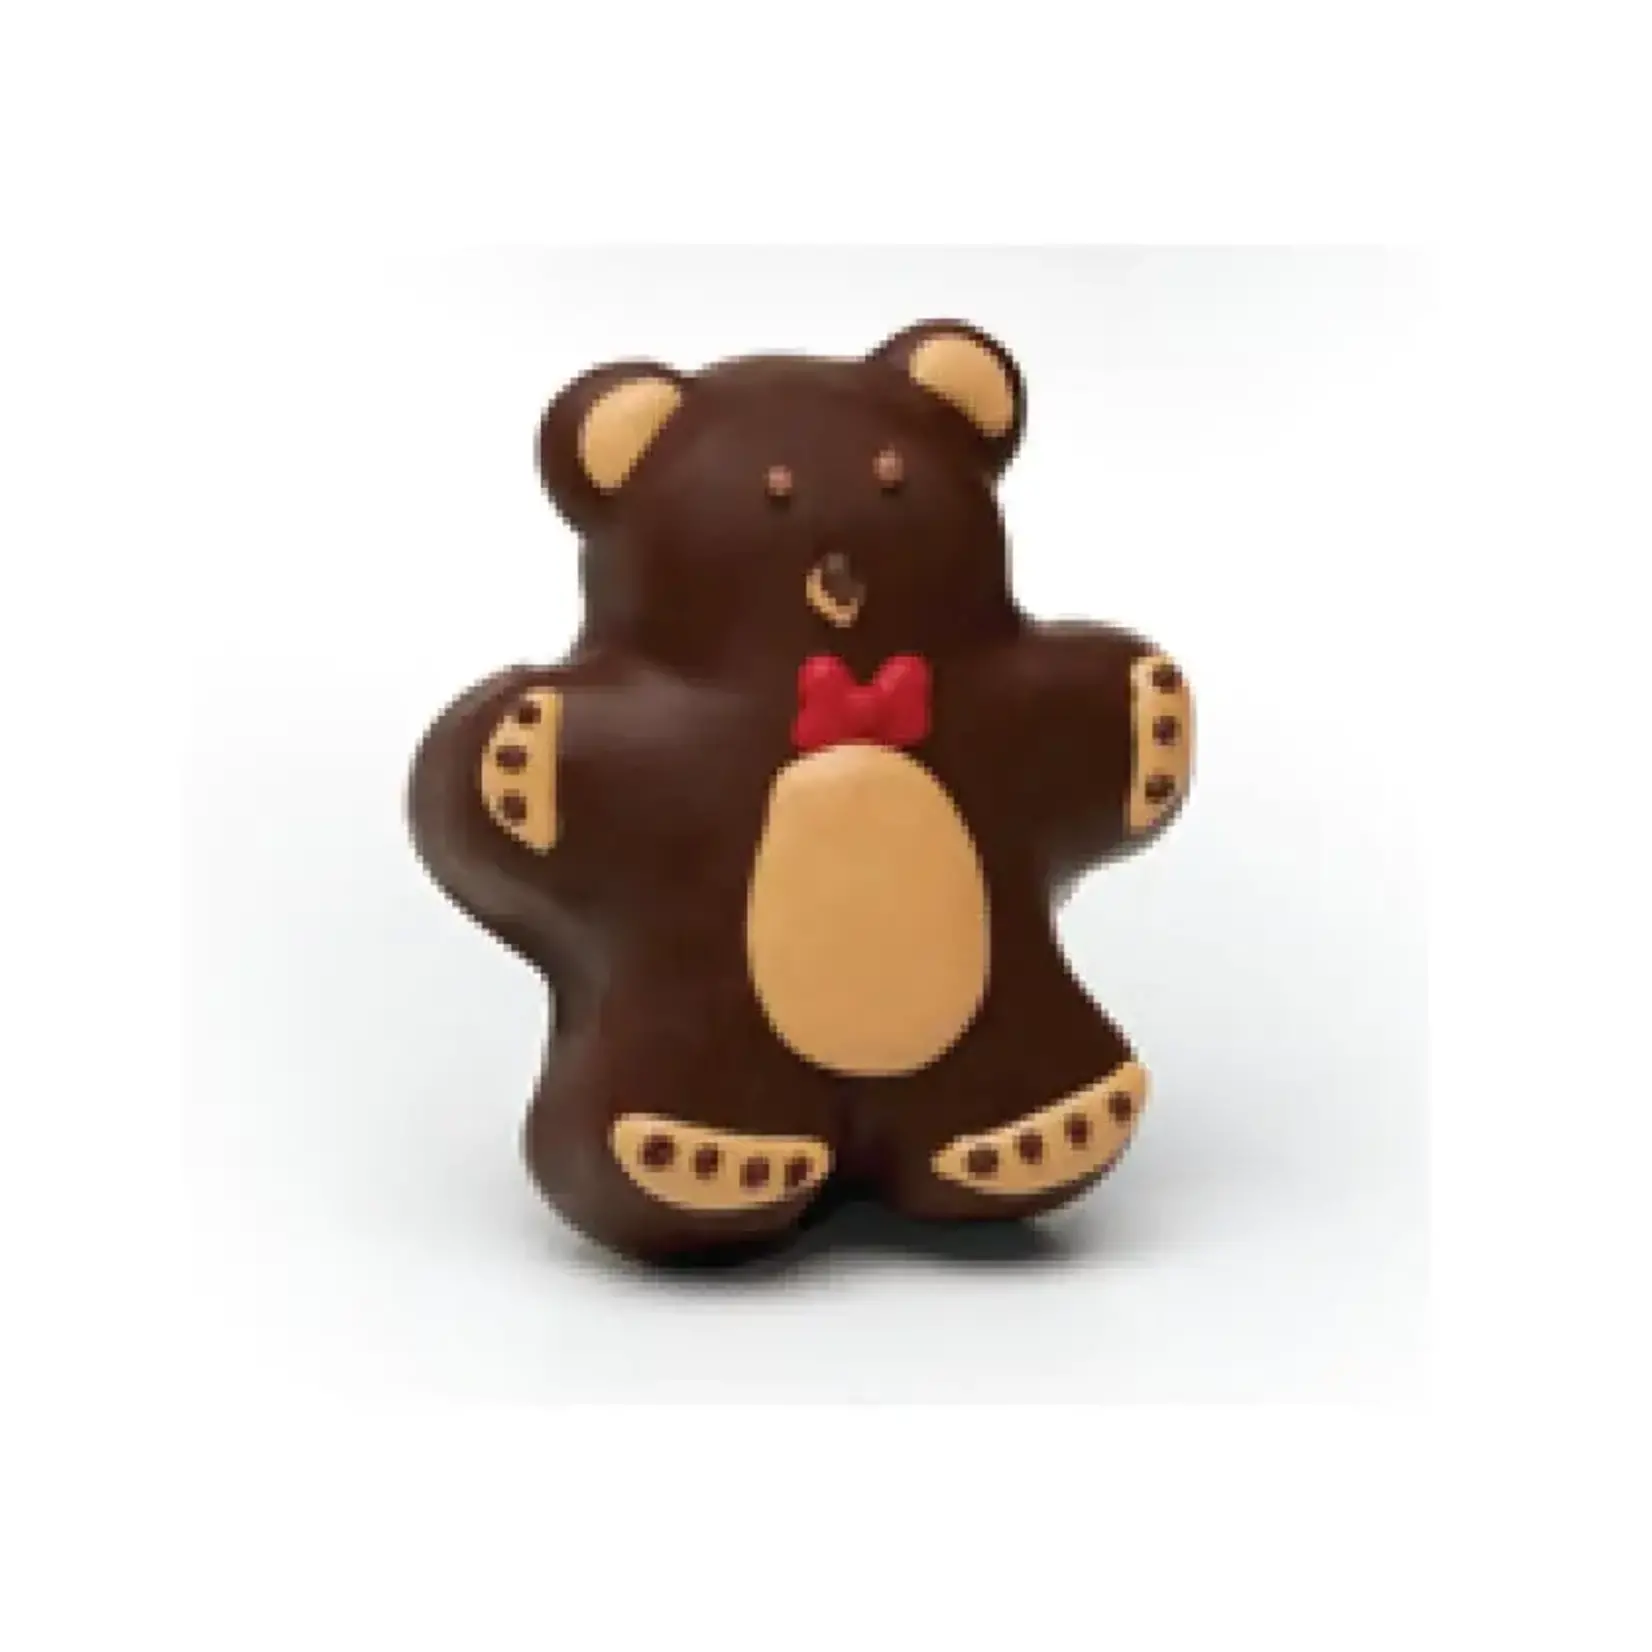 Sweet Shop USA 3pc Brownie Bear Truffle Boxed Set